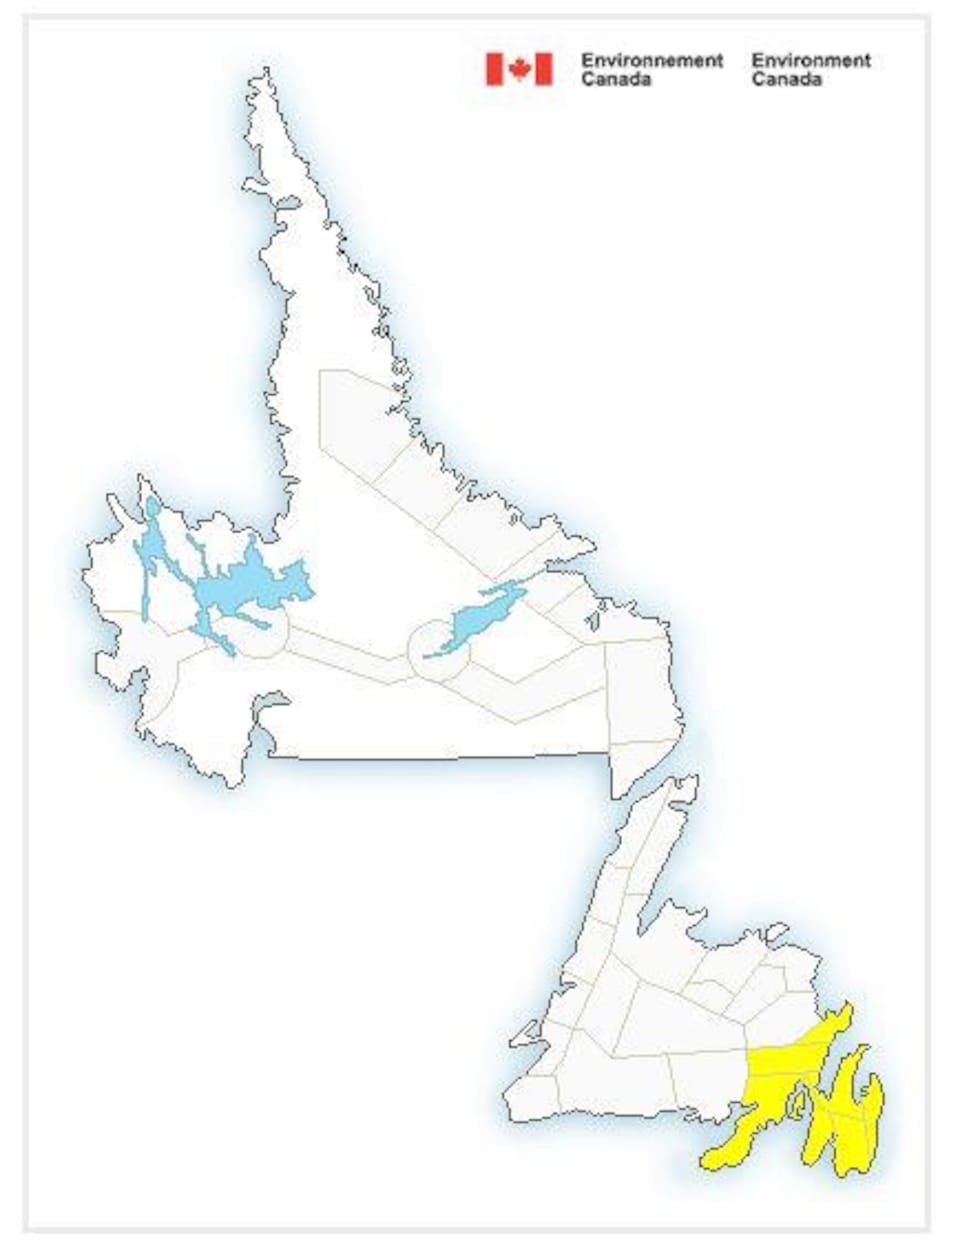 Une carte de Terre-Neuve-et-Labrador. Le sud-est de Terre-Neuve est surligné en jaune. 